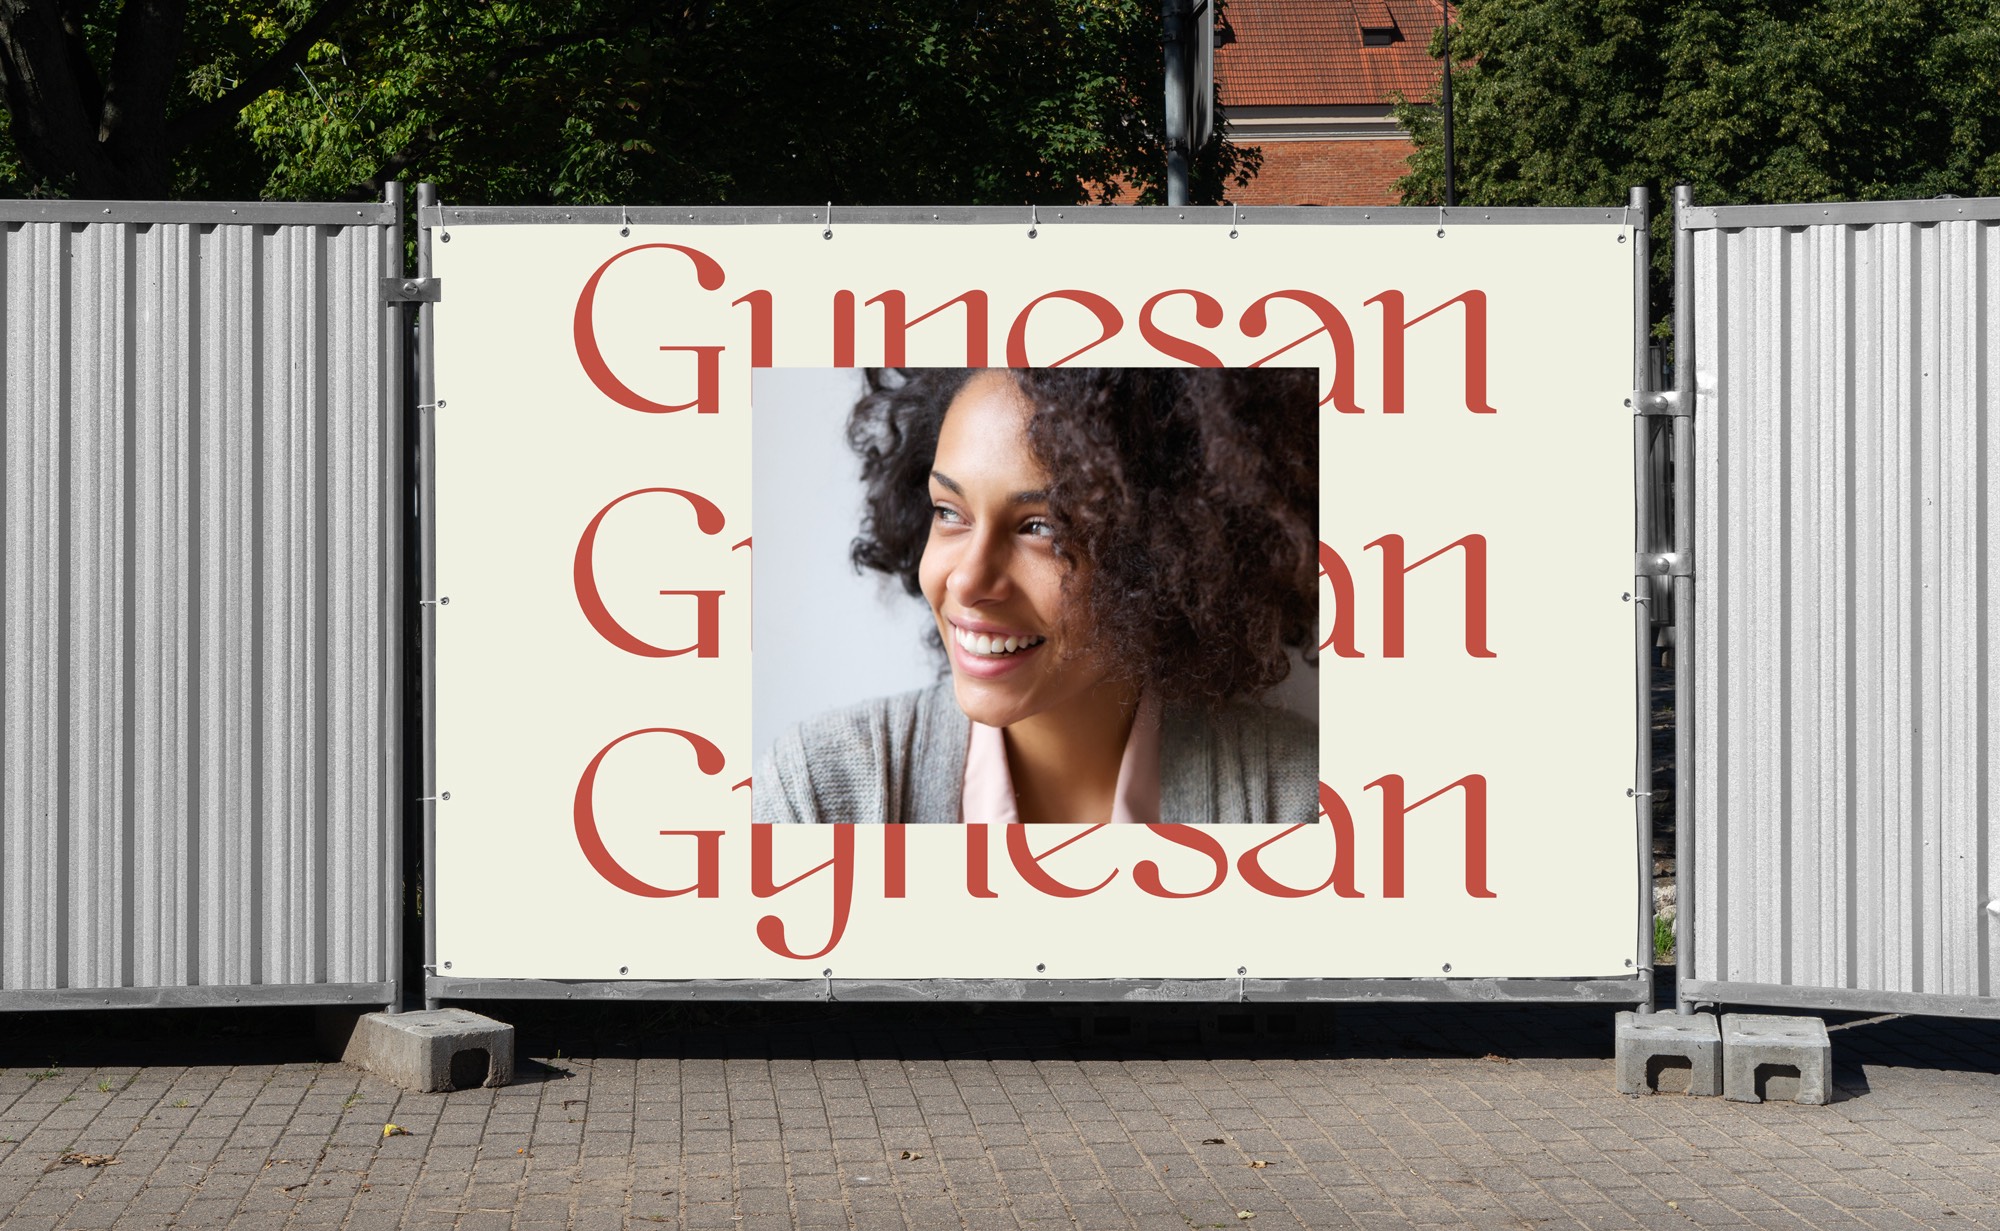 Diseño y desarrollo de identidad visual corporativa para Gynesan. Detalle lona publicitaria.